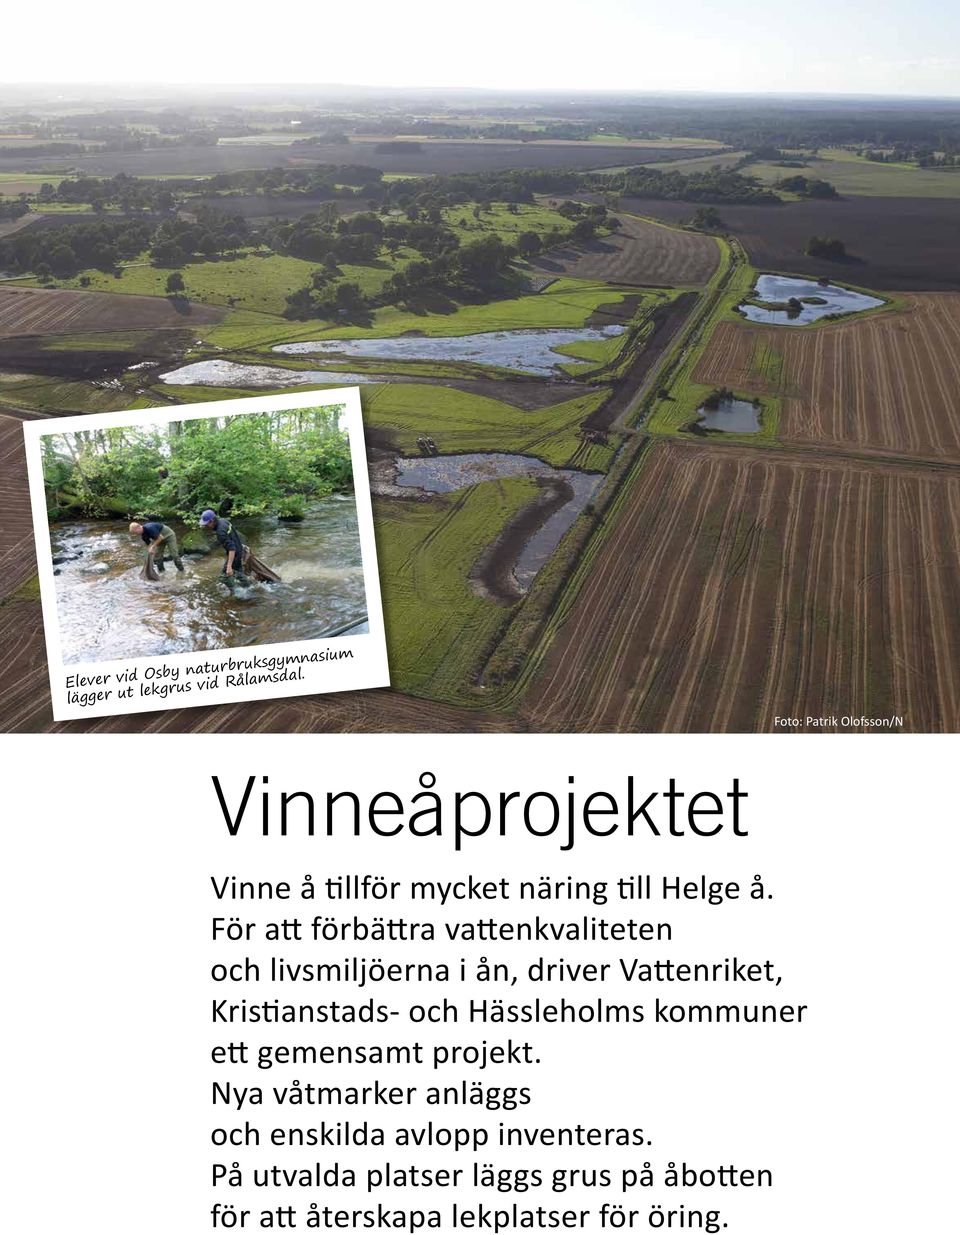 För att förbättra vattenkvaliteten och livsmiljöerna i ån, driver Vattenriket, Kristianstads- och